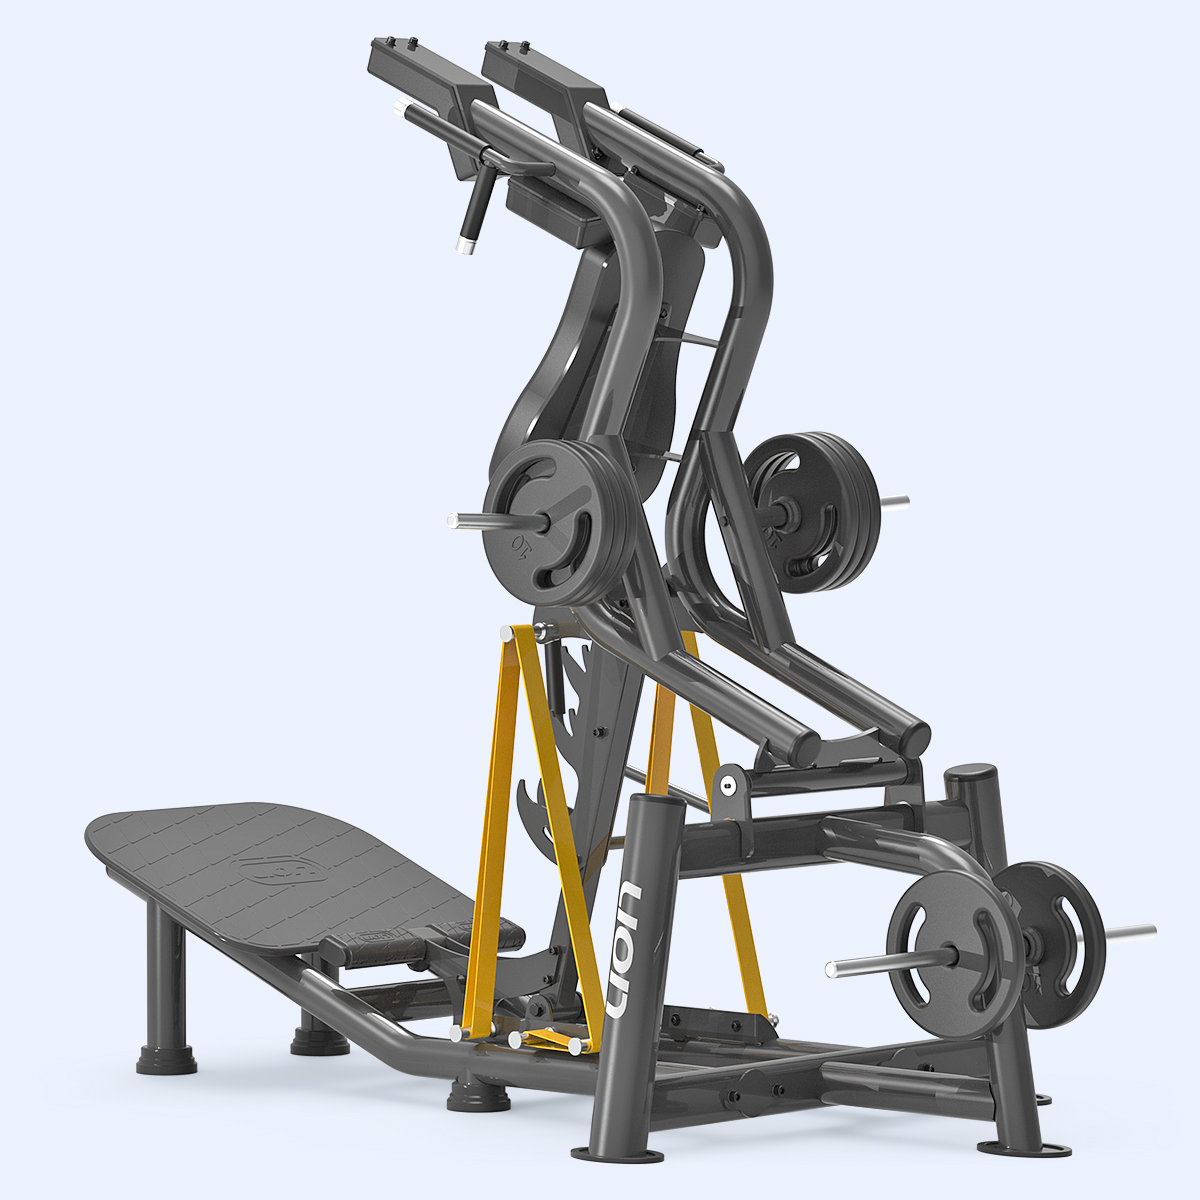 Agachamento Squat Lion Fitness, O Agachamento Squat da linha peso livre  foi desenvolvido para o ganho, manutenção ou reabilitação de mobilidade  articular, amplitude de movimento e força, By Lion Fitness